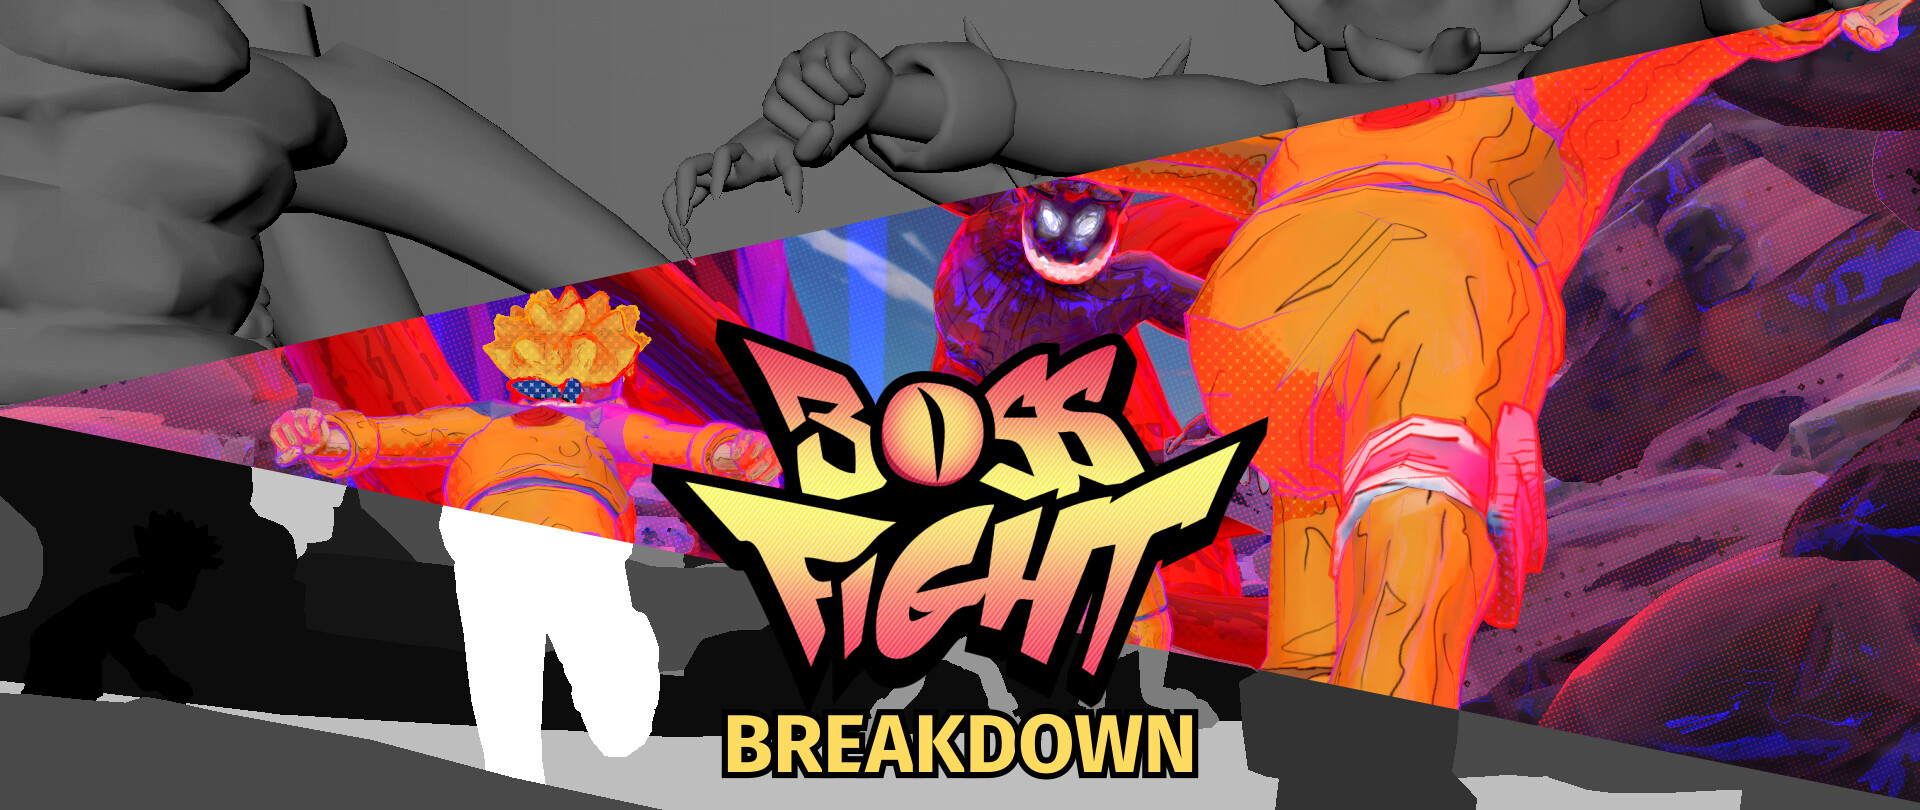 Conta de anime fighters muito forte - Roblox - Anime Fighters - GGMAX